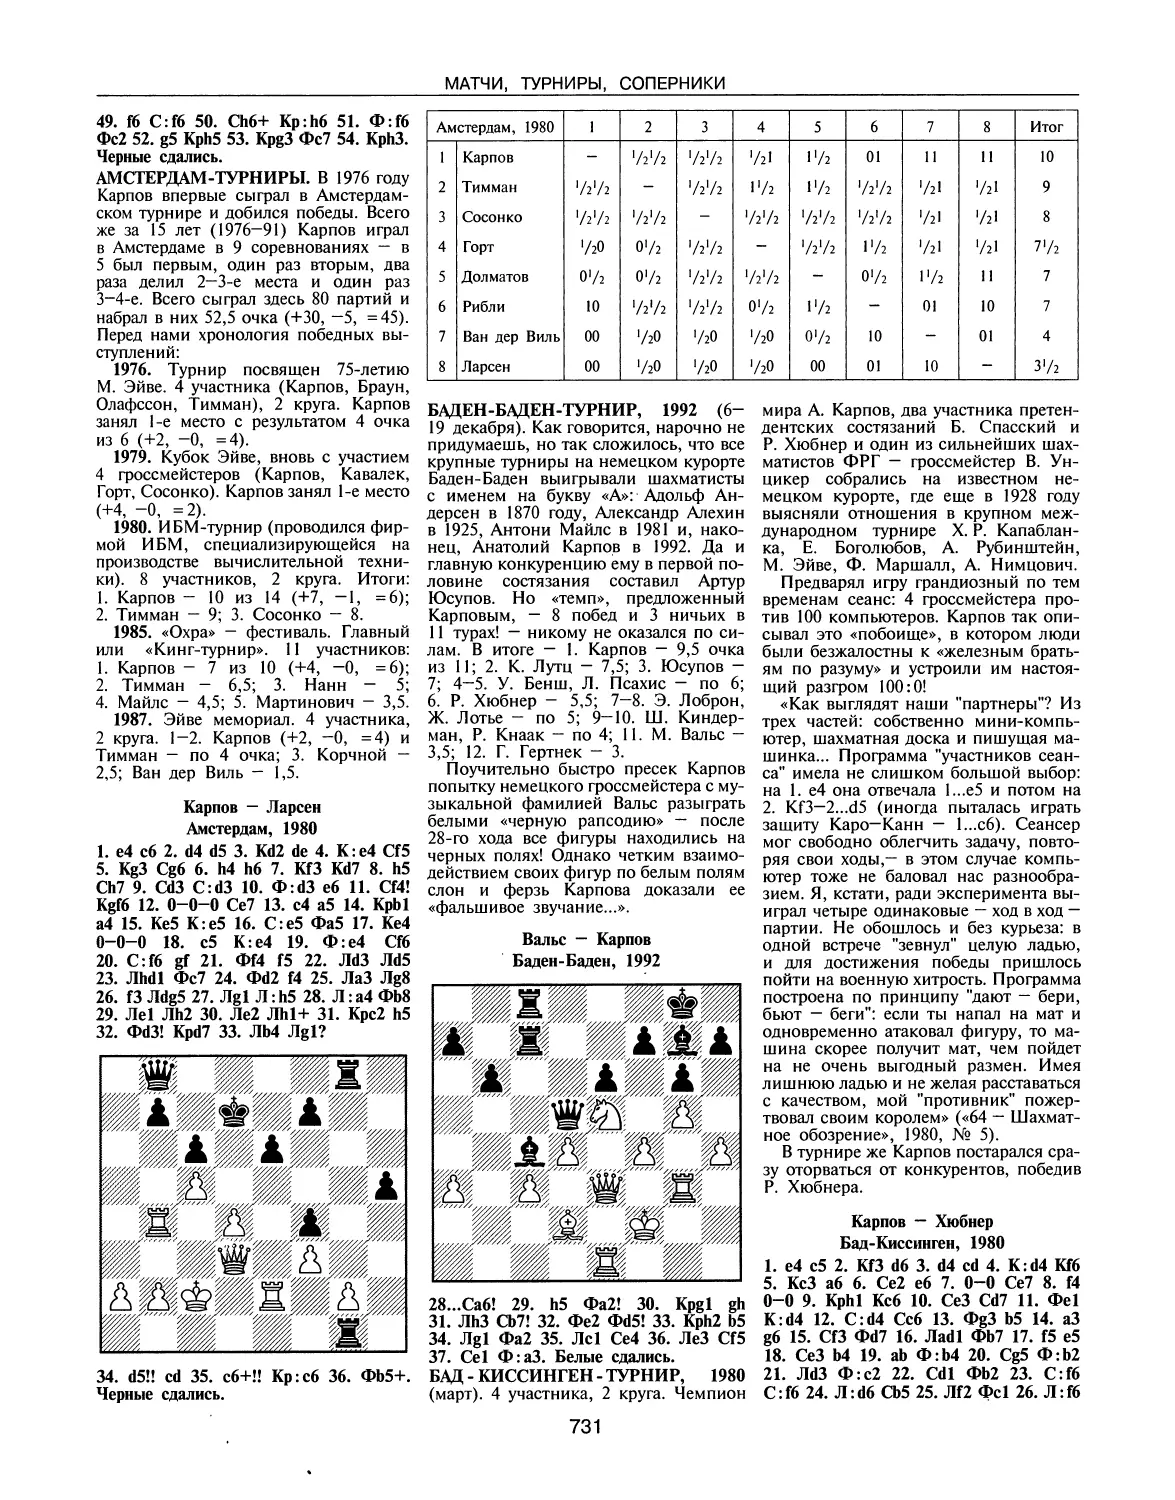 Амстердам-турниры
Баден-Баден-турнир, 1992
Бад-Киссинген-турнир, 1980